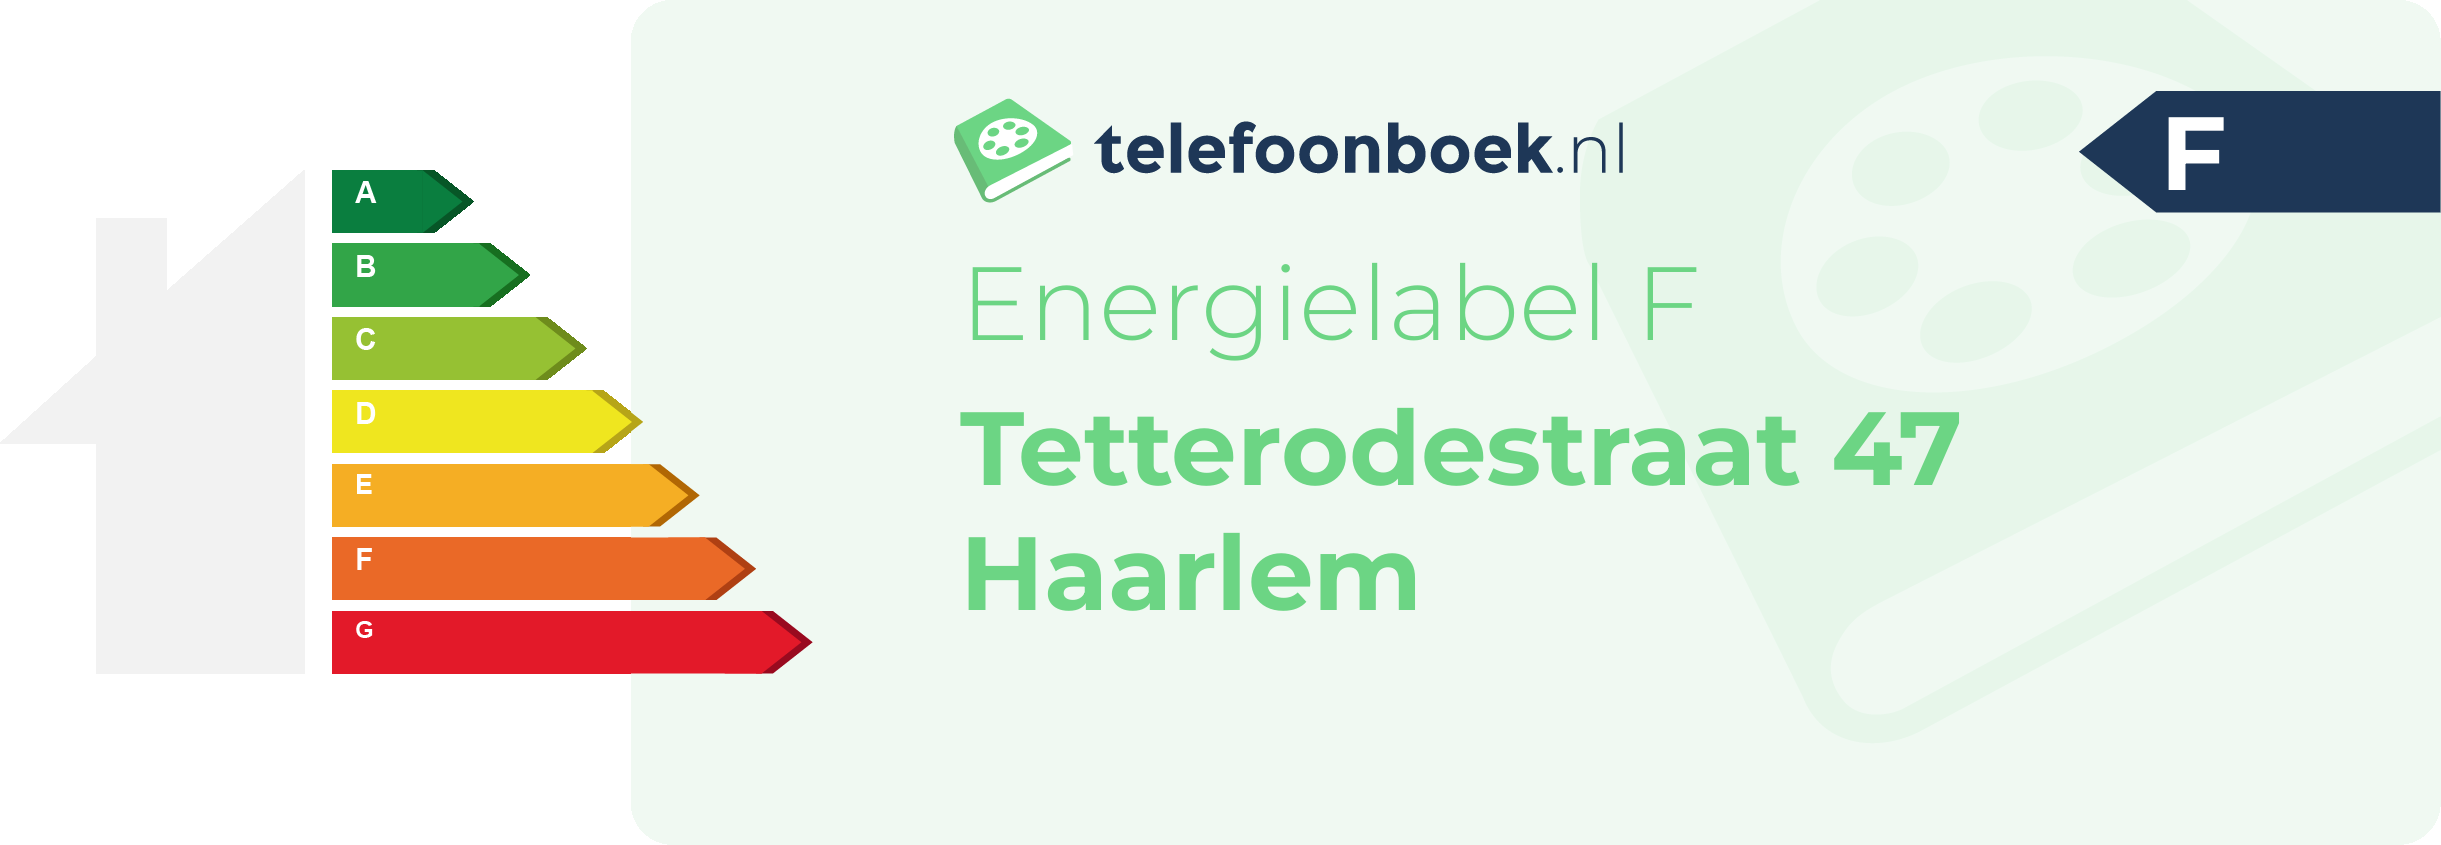 Energielabel Tetterodestraat 47 Haarlem